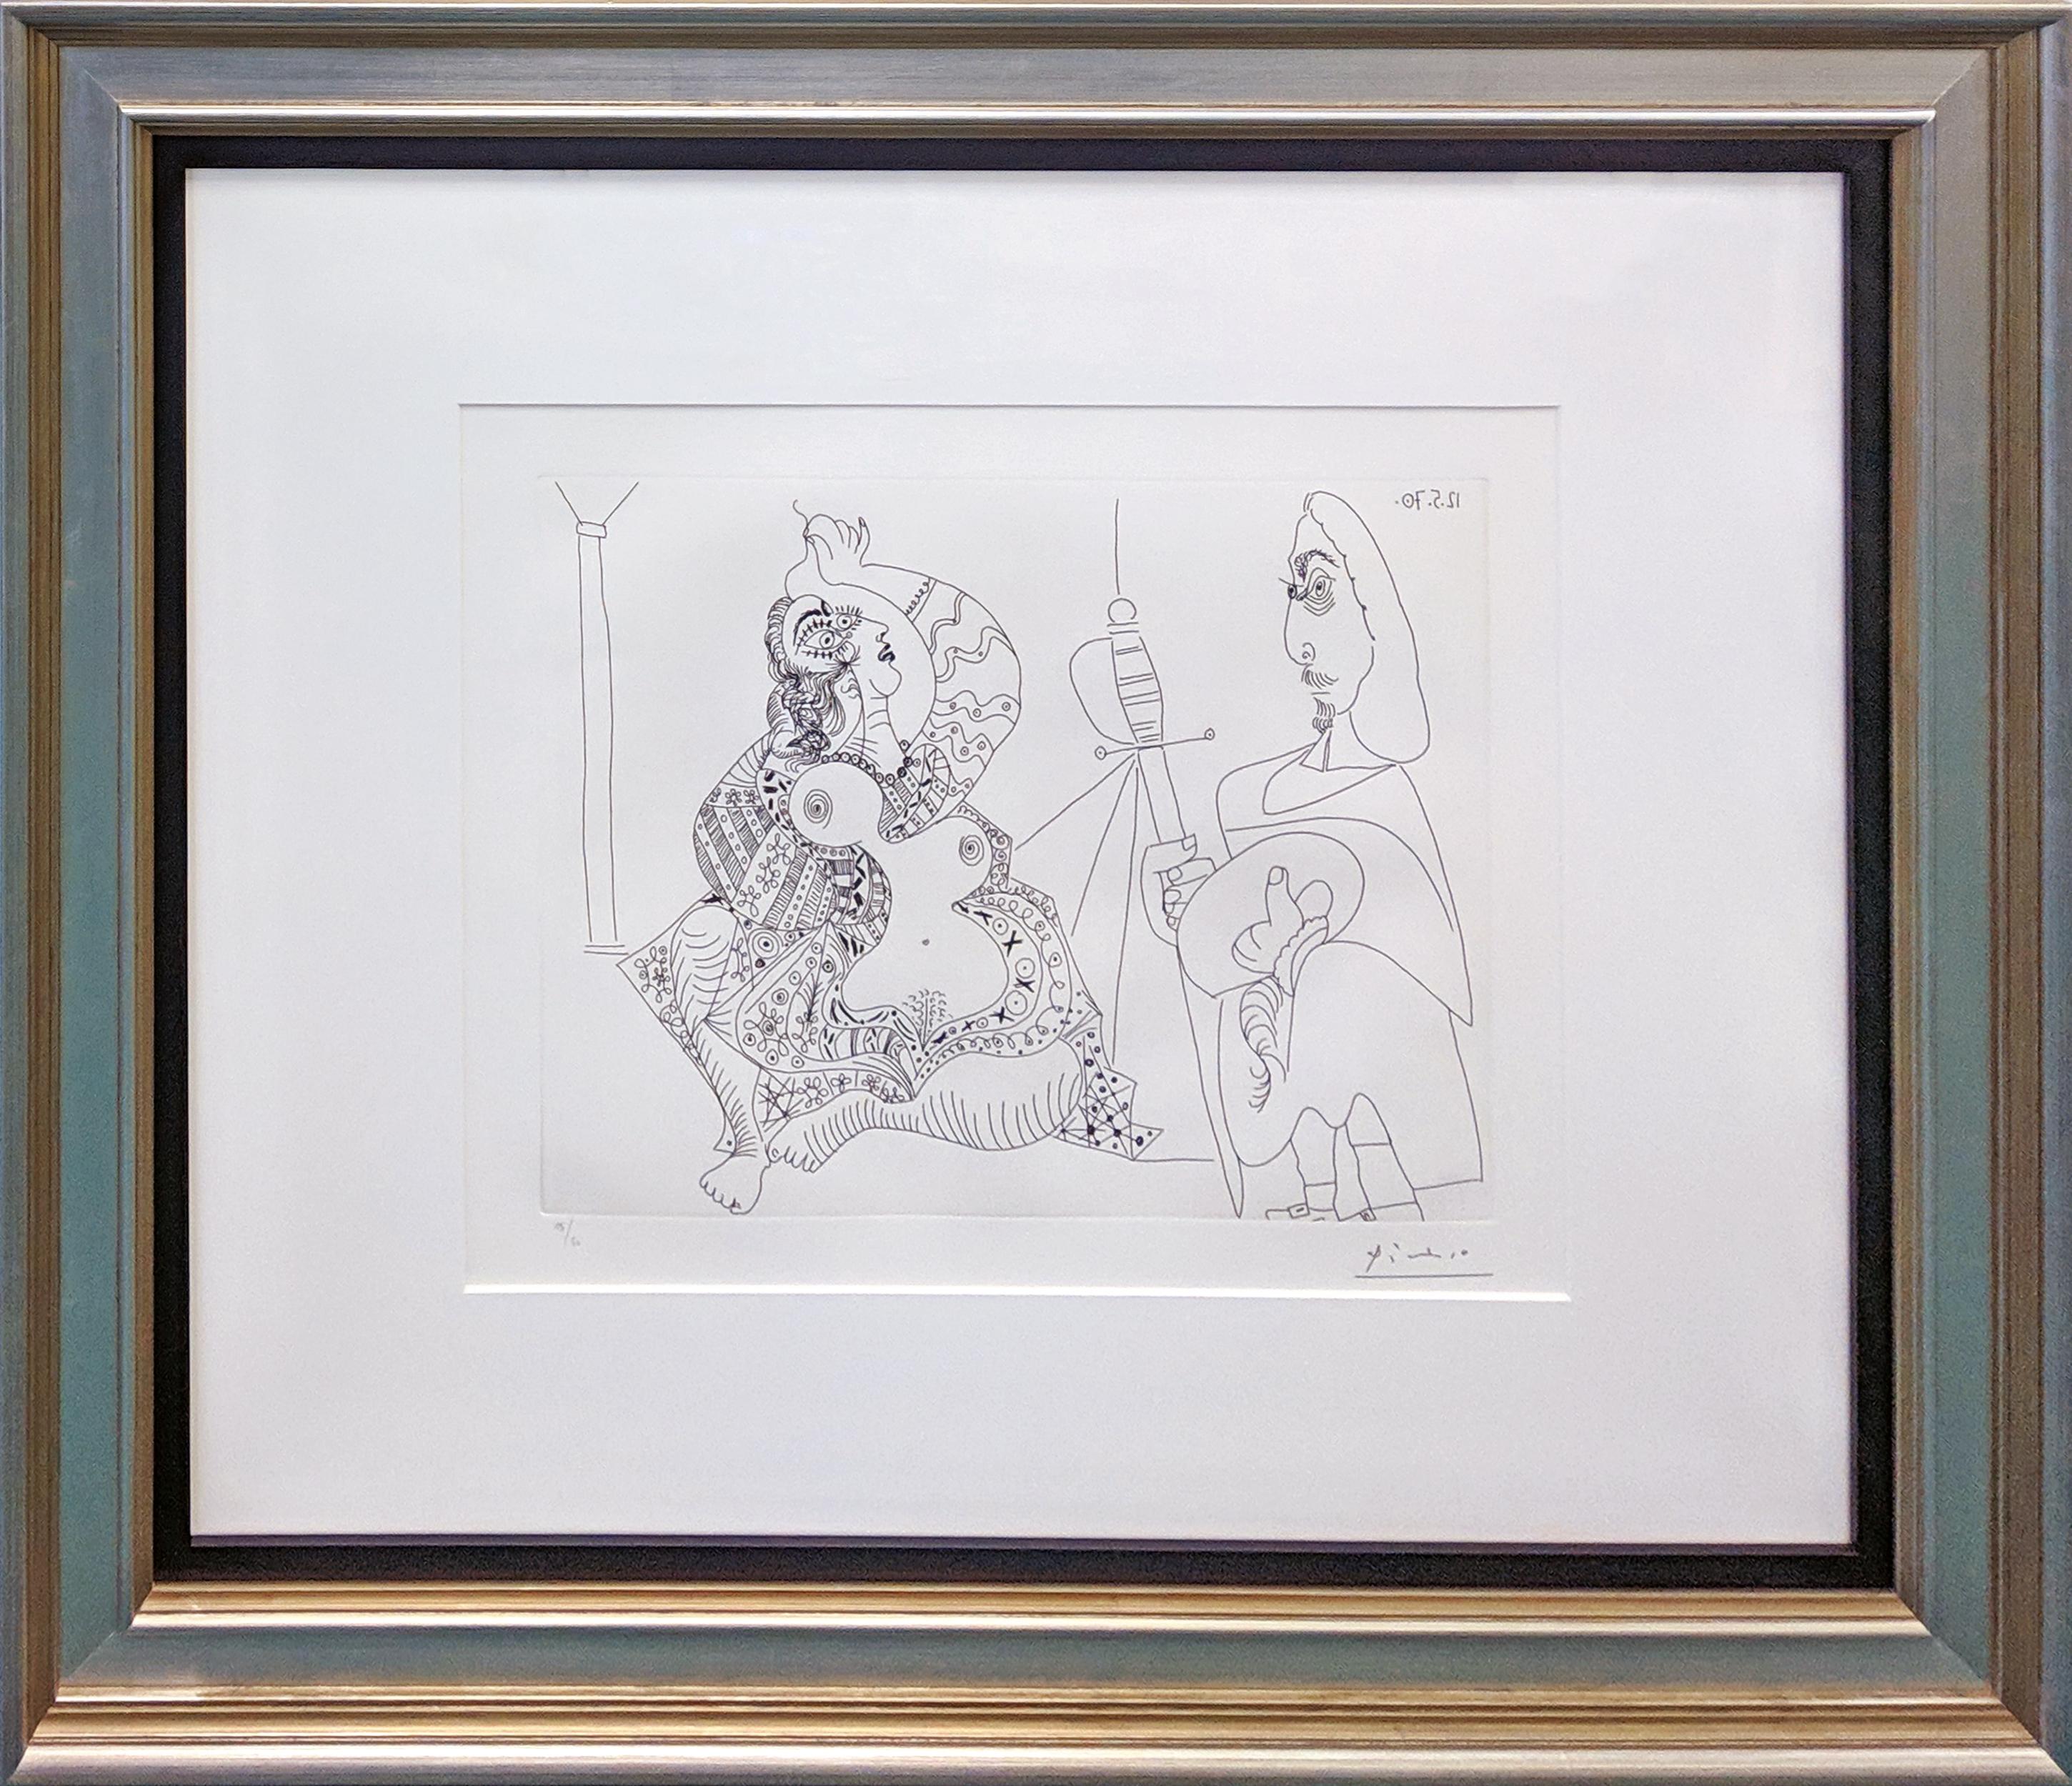 MOUSQUETAIRE ET ODALISQUE, MEDUSE, TAFEL 47 AUS SERIE 156 (BLOCH 1902) – Print von Pablo Picasso